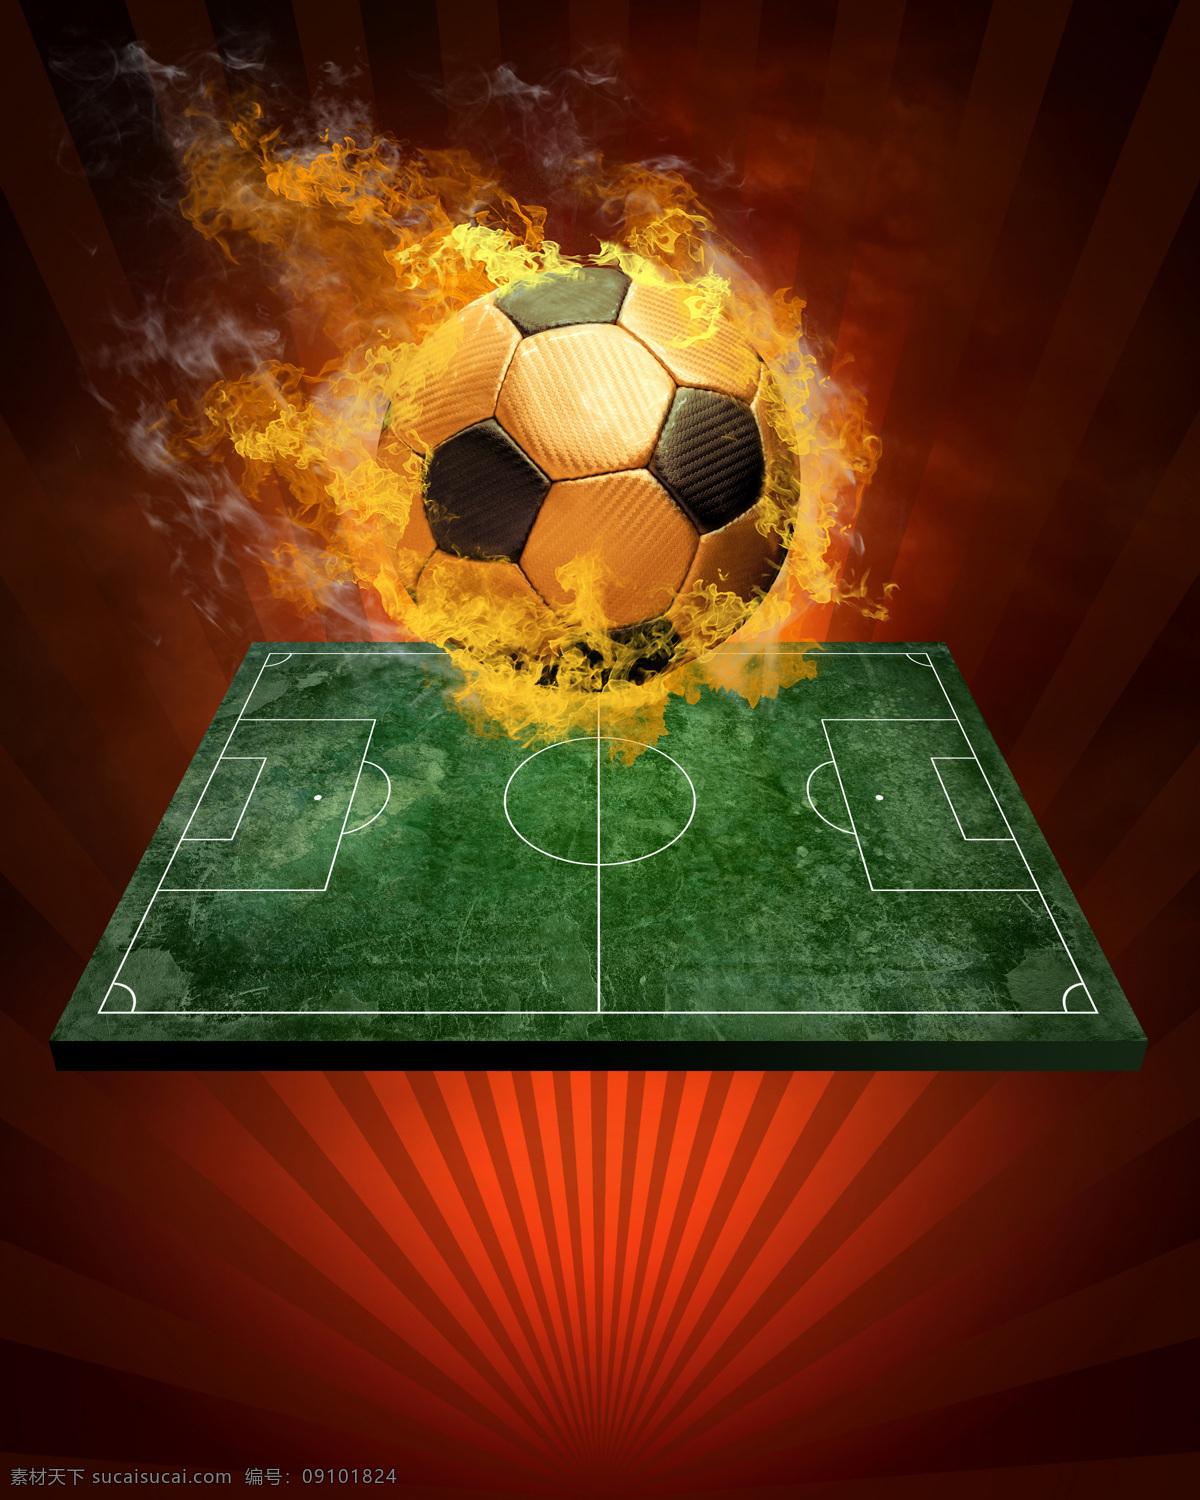 火焰 燃烧 体育场 体育运动 文化艺术 足球 上空 设计素材 模板下载